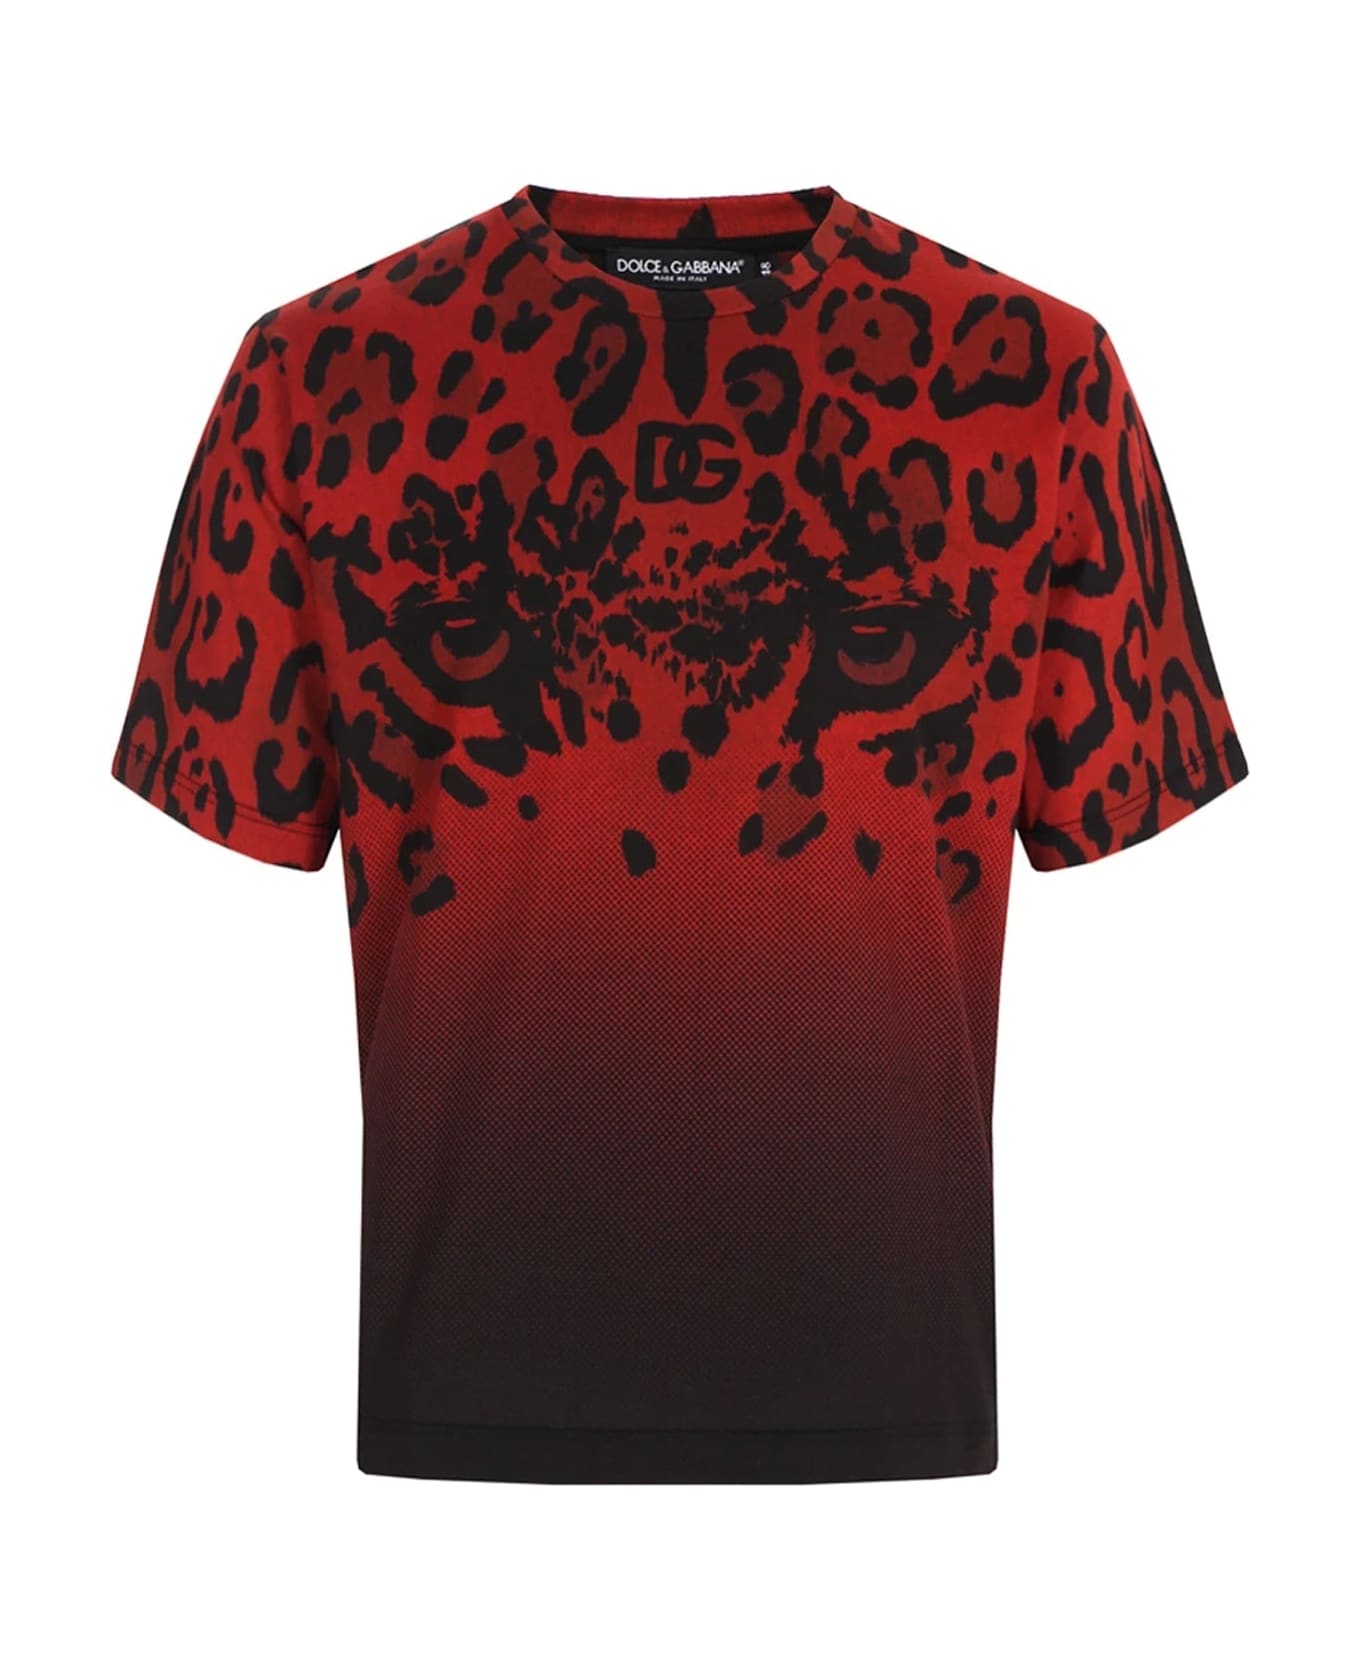 Dolce & Gabbana Animalier T-shirt - Red